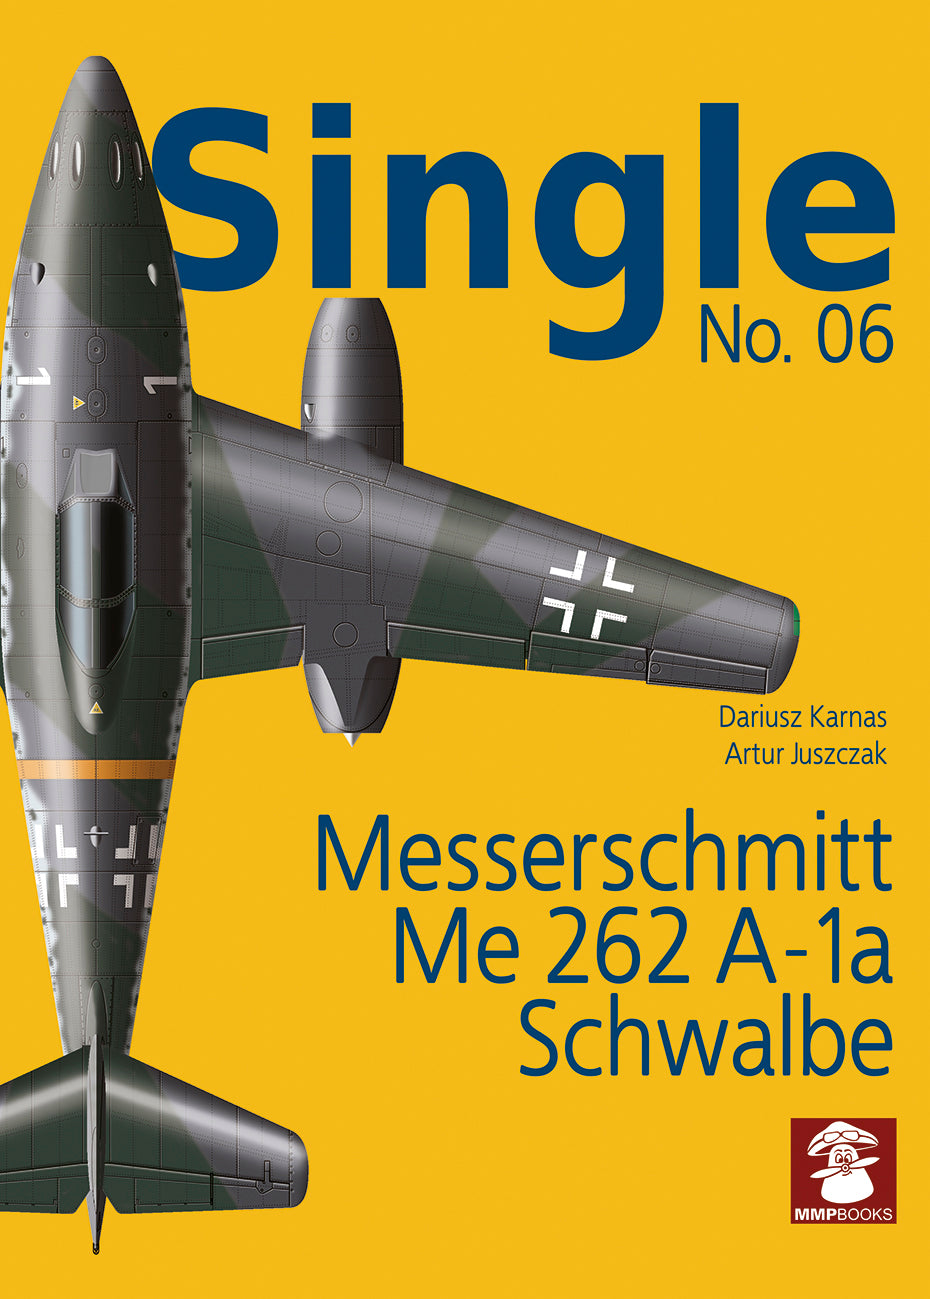 Messerschmitt Me 262 A-1a Schwalbe